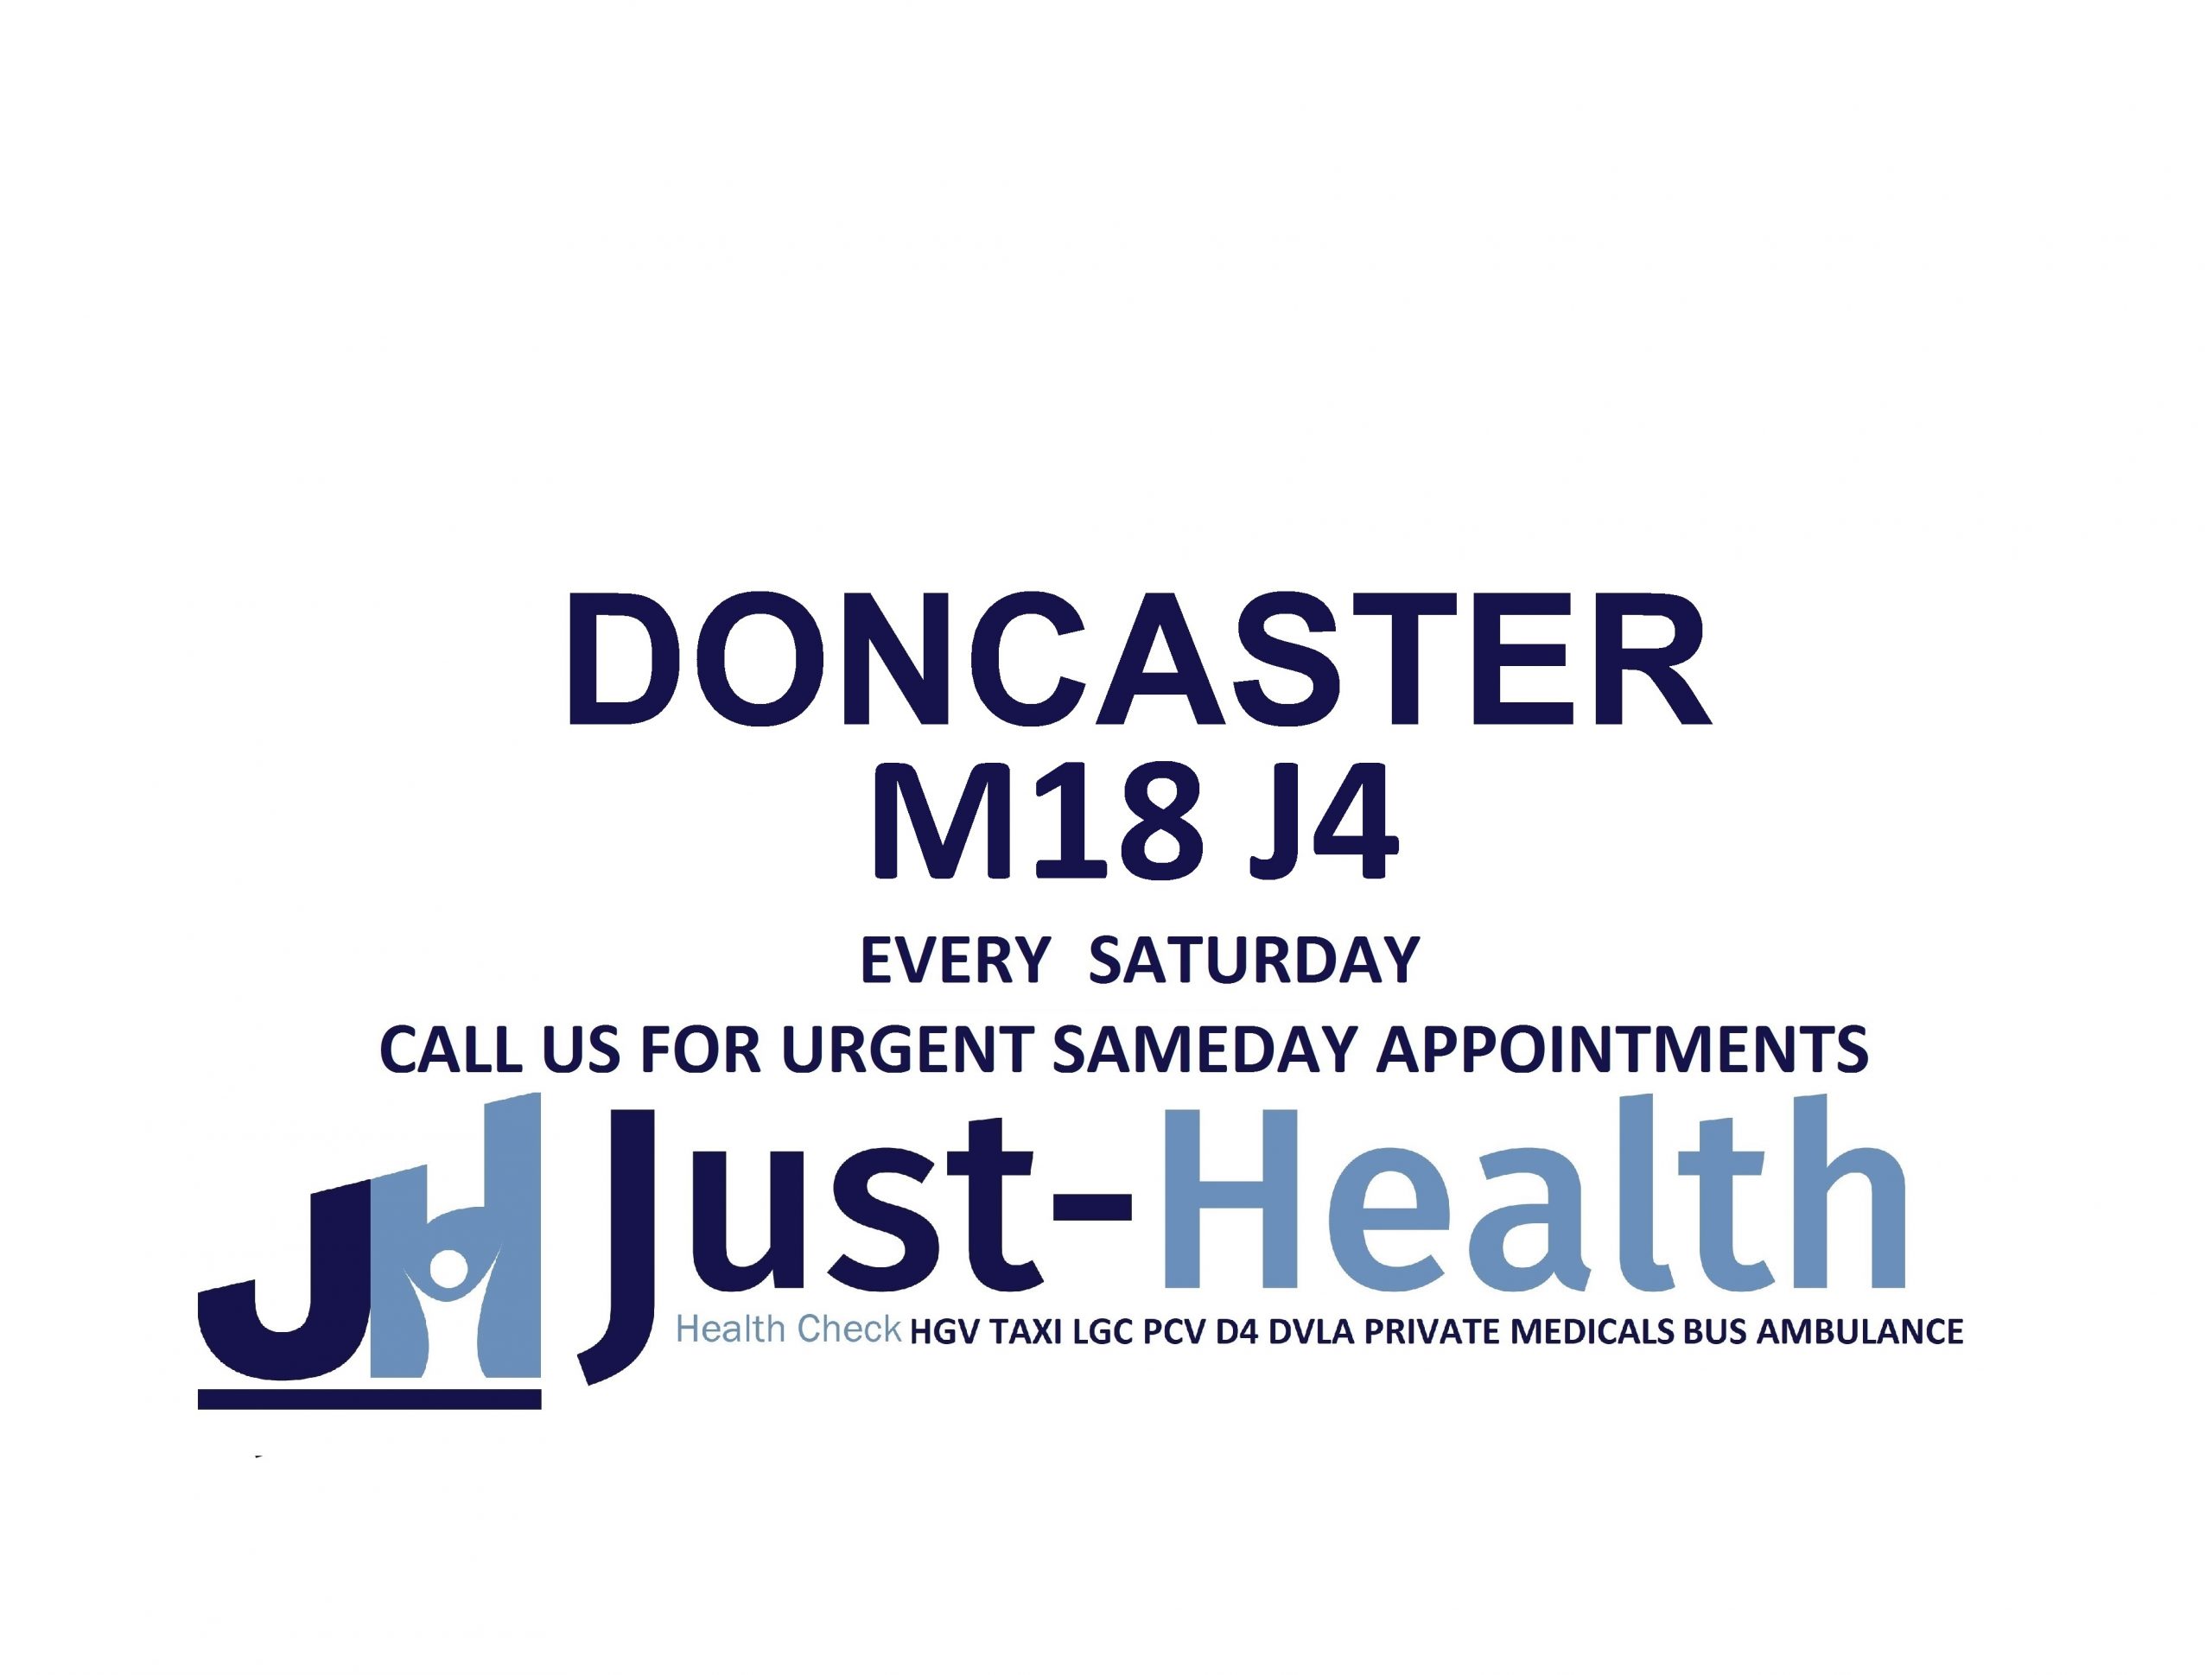 JUST HEALTH D4 Doncaster taxi medicals Drivers